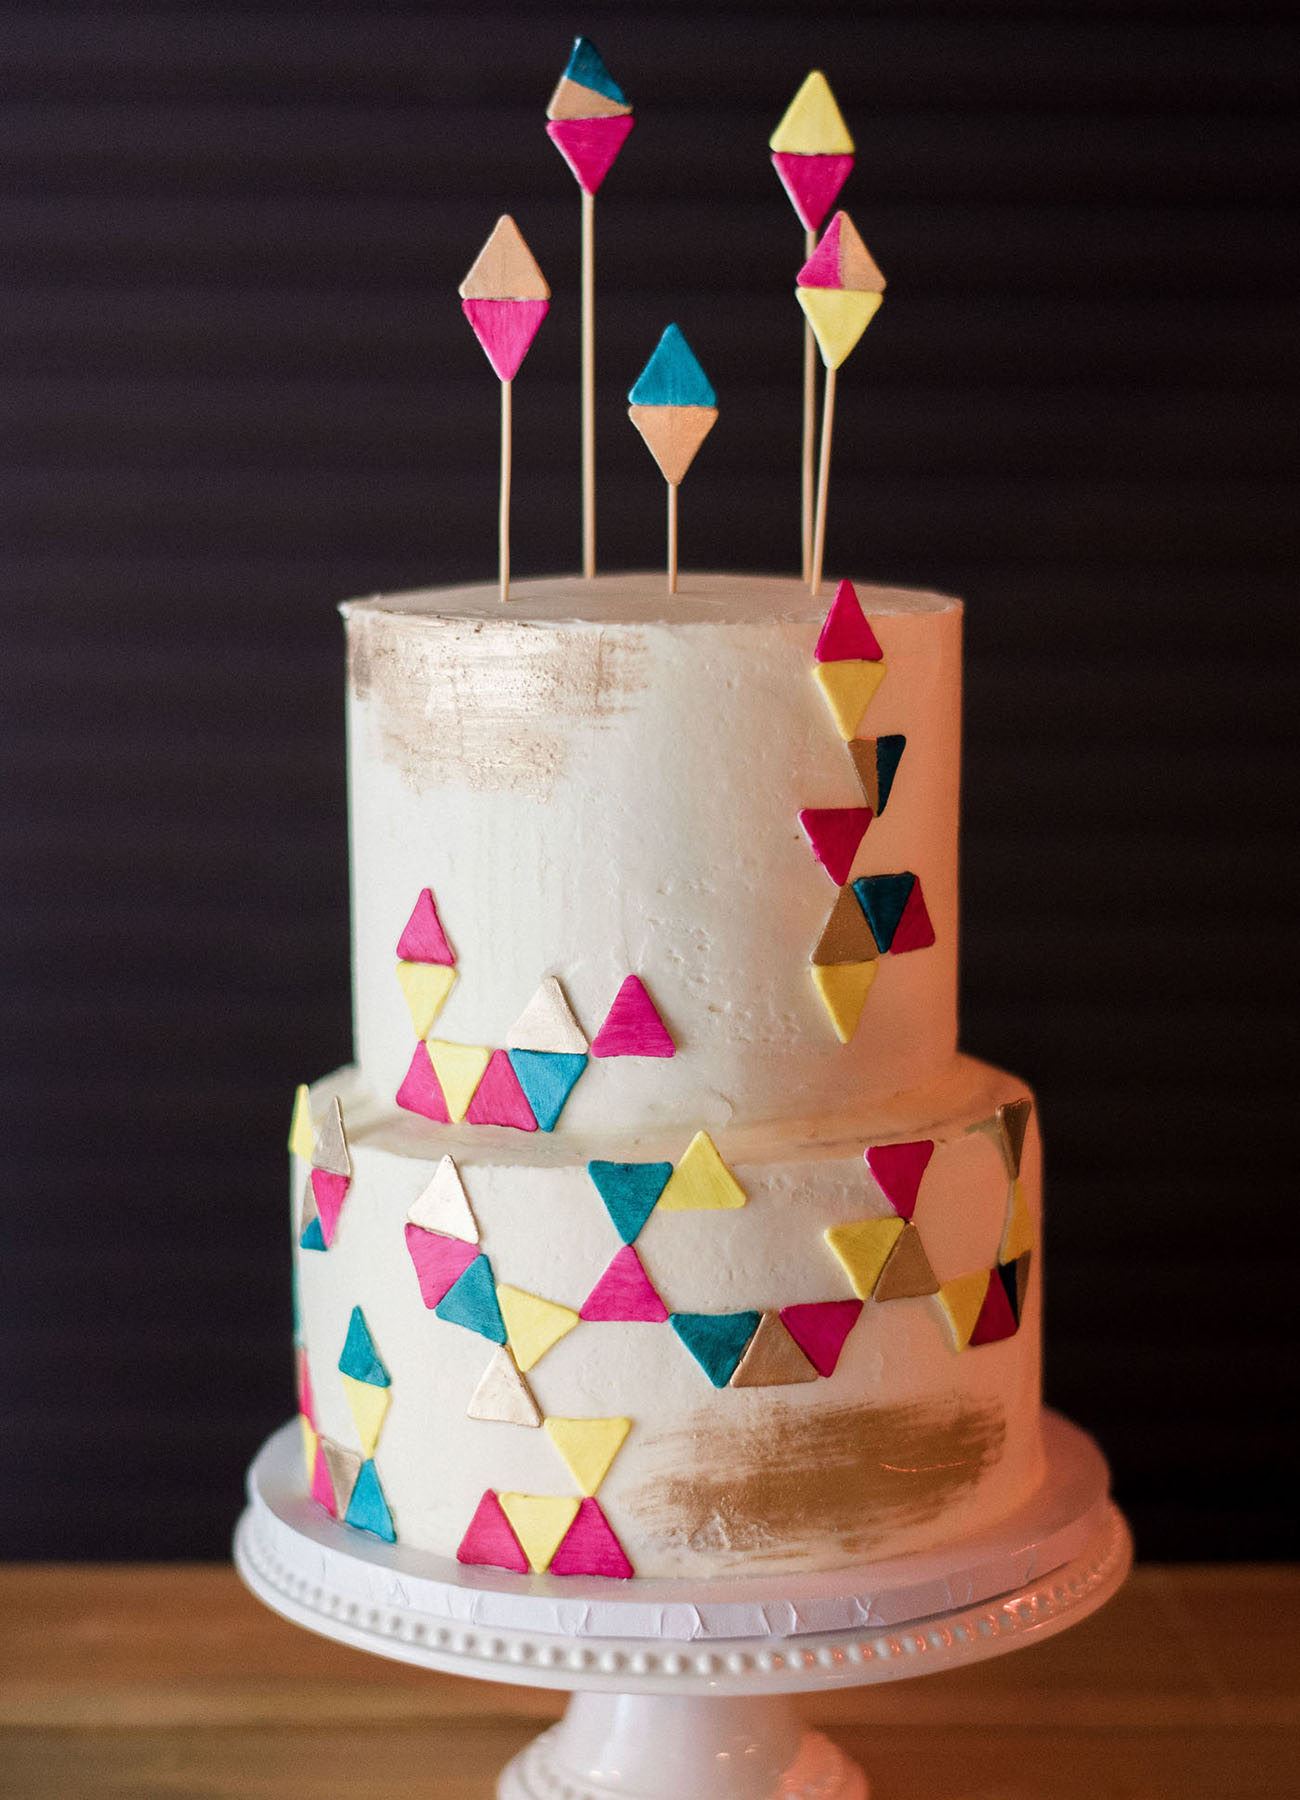 Inspiração para bolos de casamento modernos | Créditos: Matt Rice